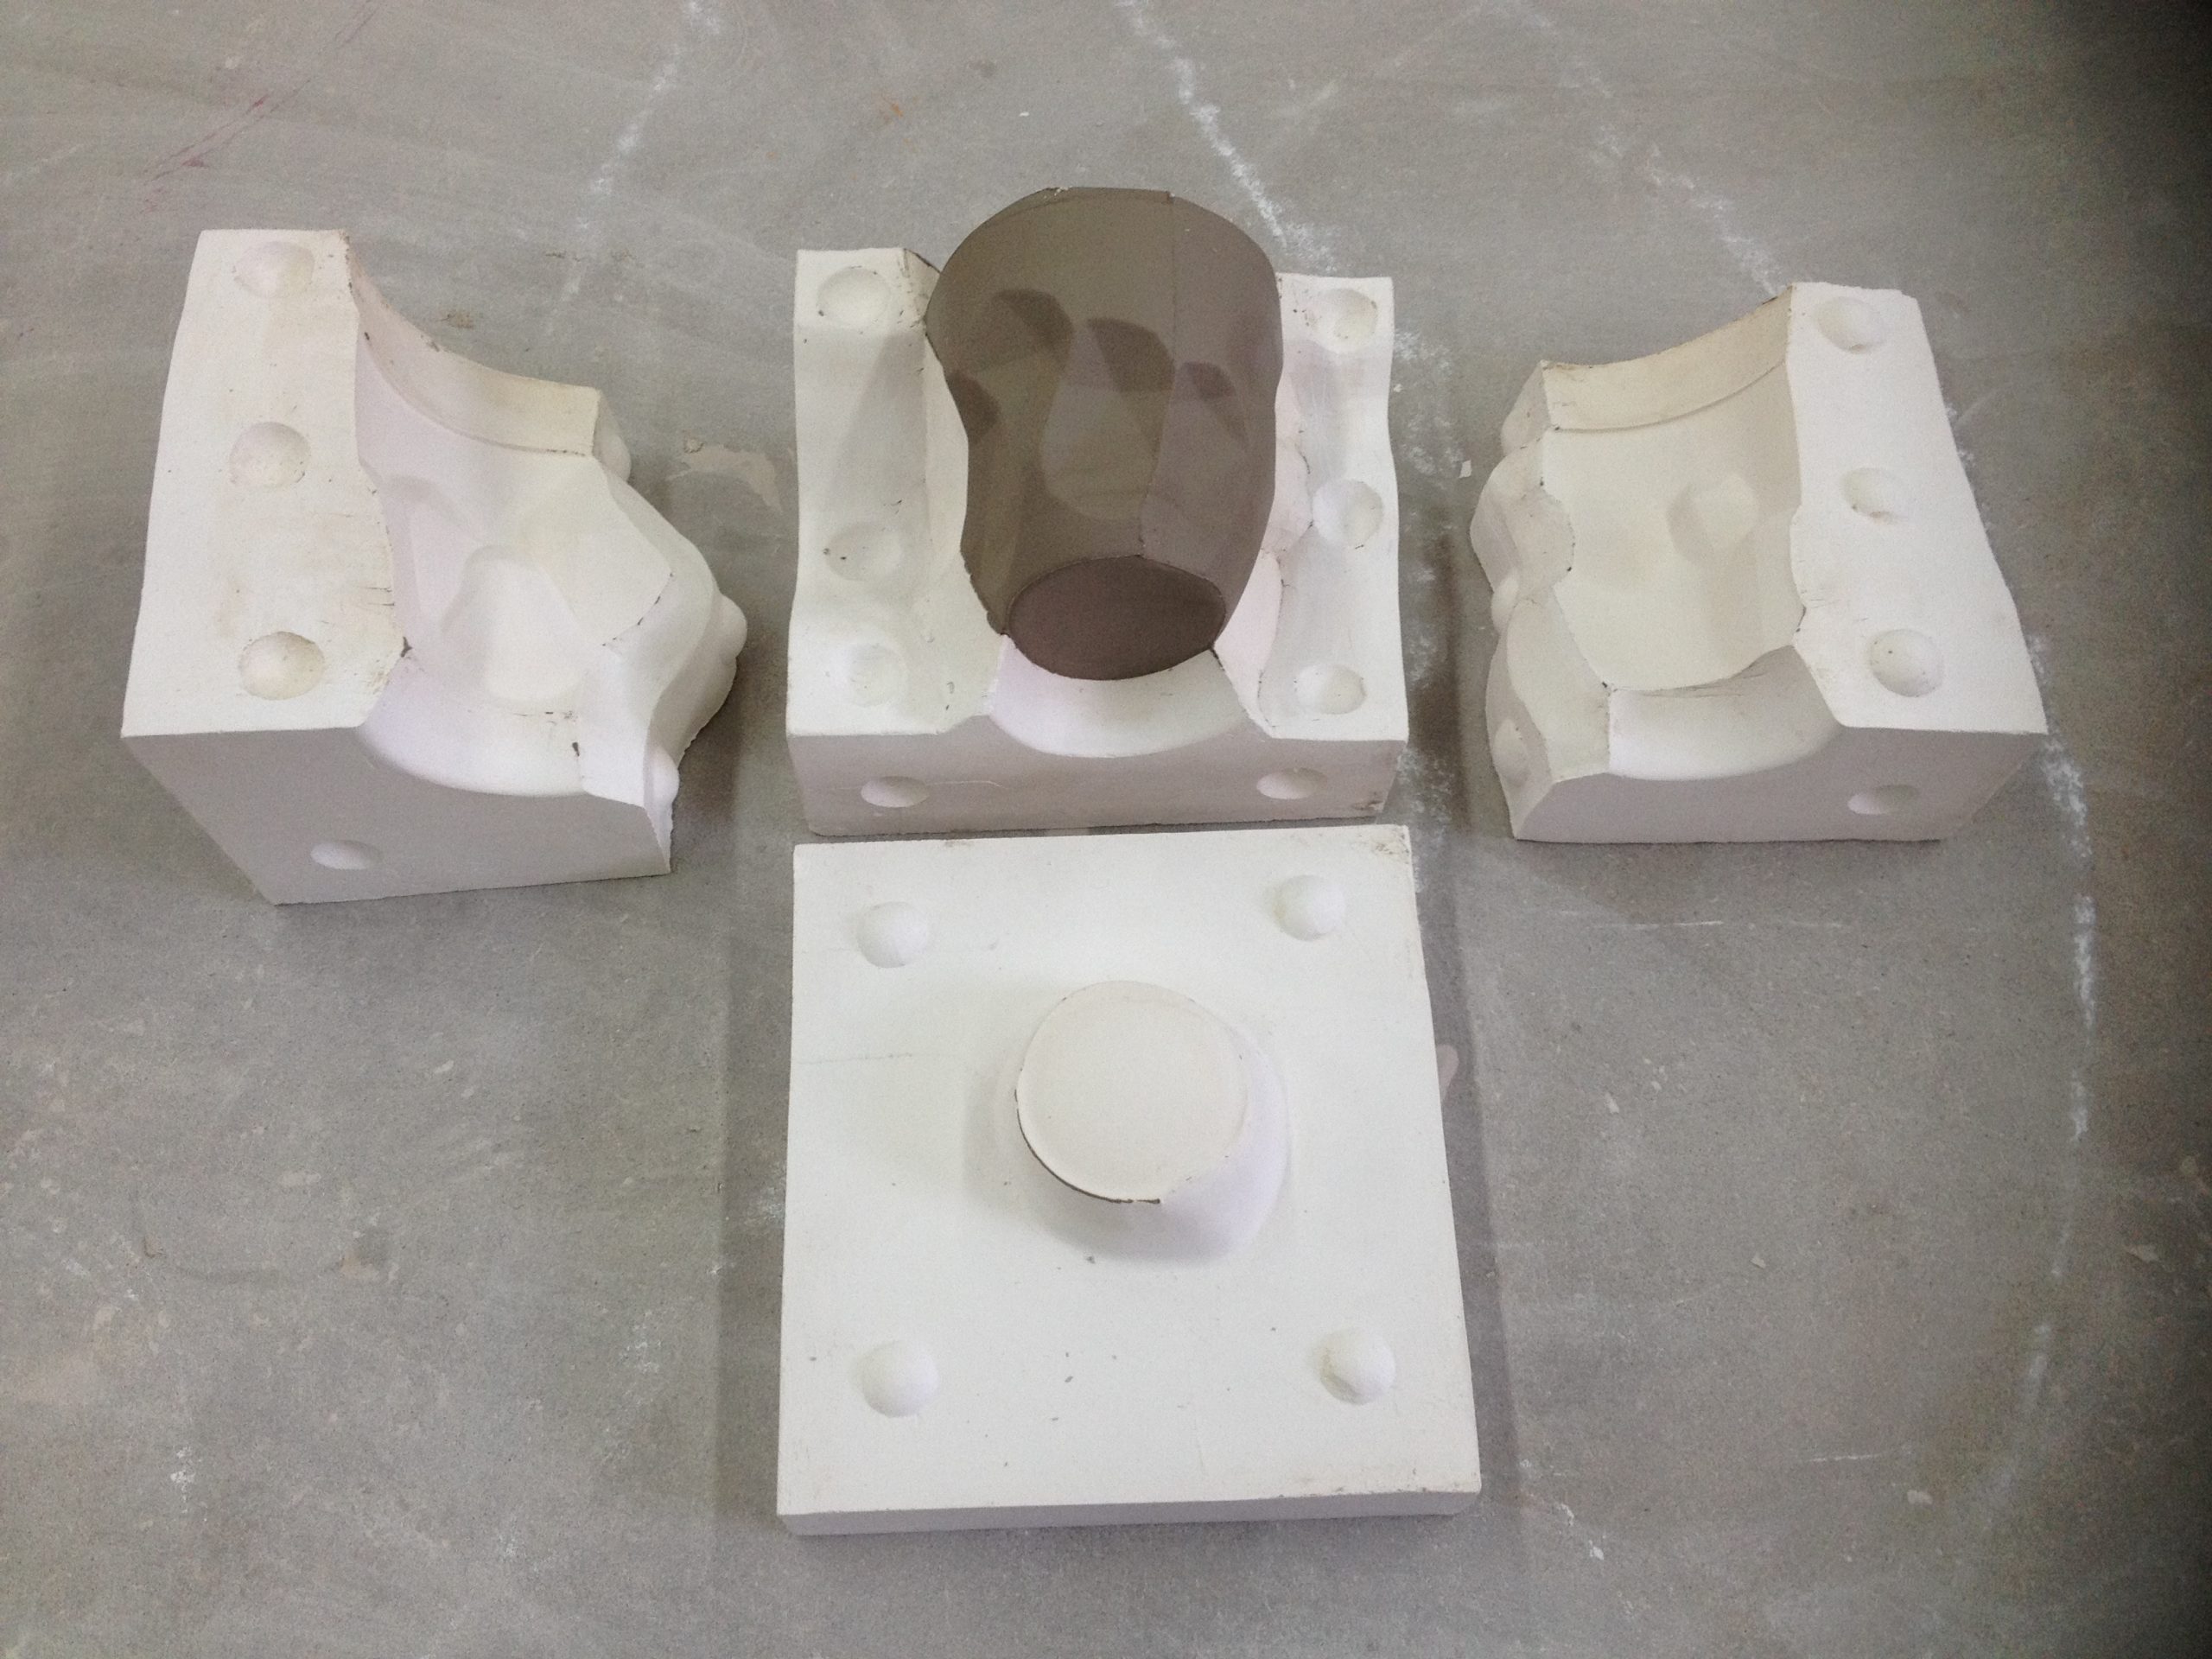 4 Part Plaster Mold Tutorial